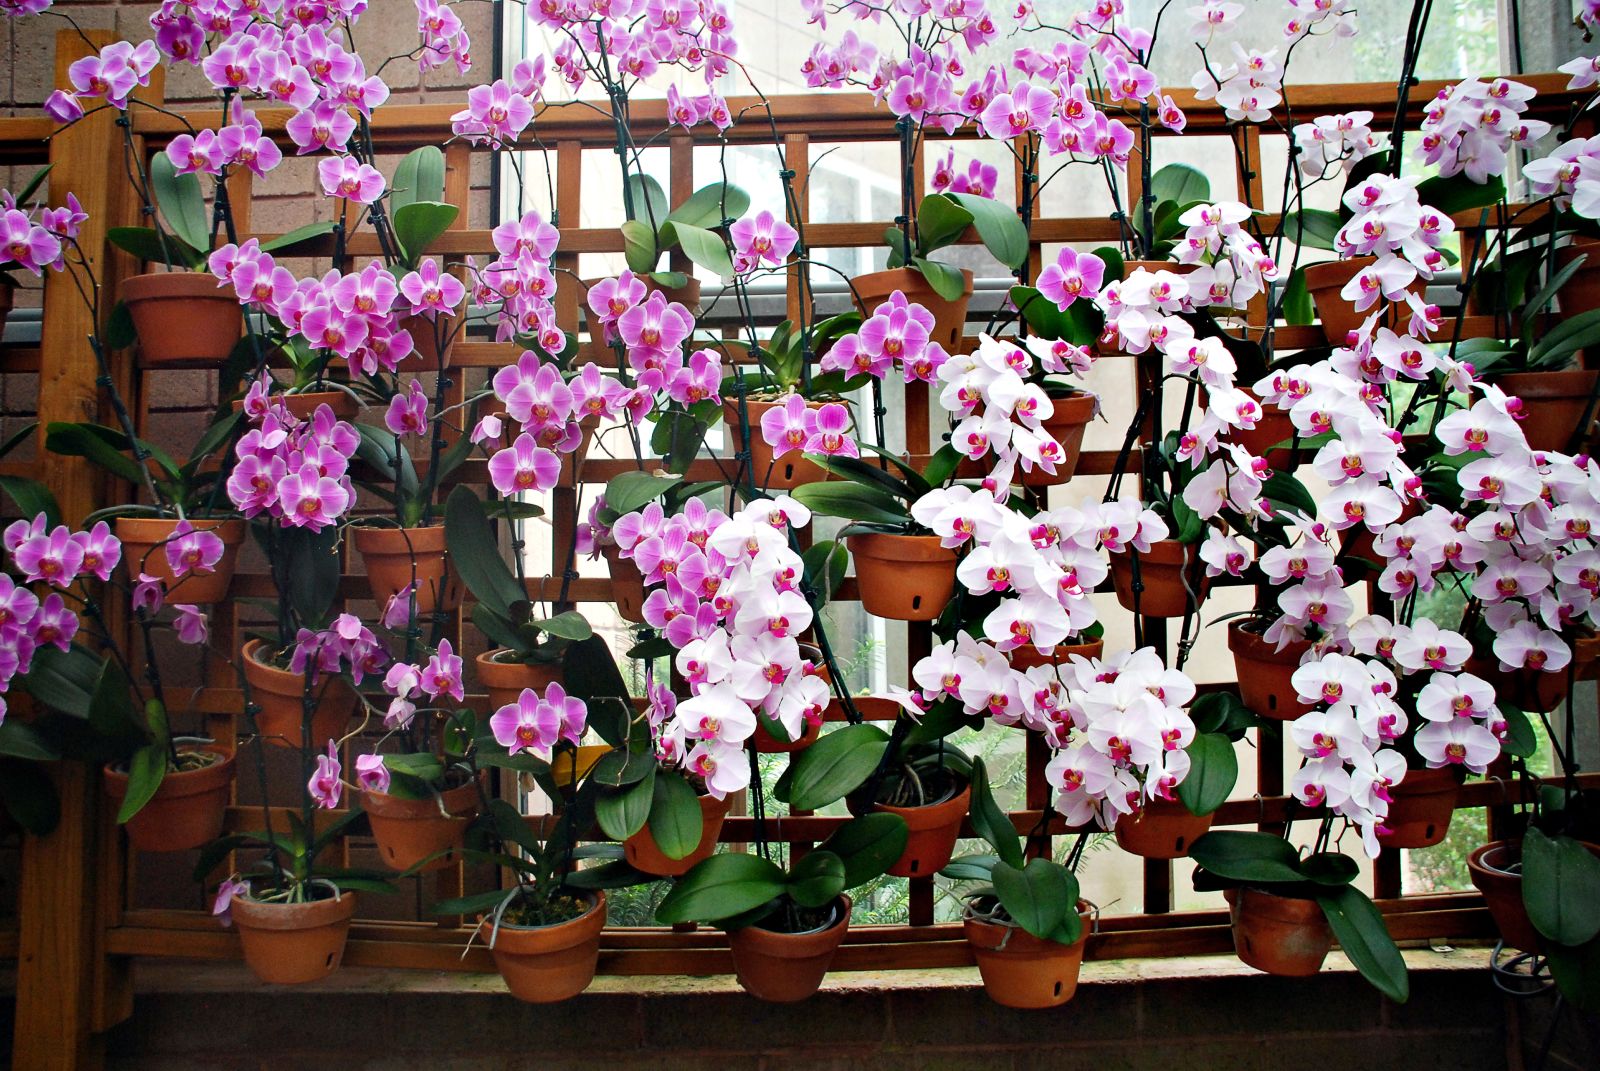 Orchid display at Atlanta Botanical Garden